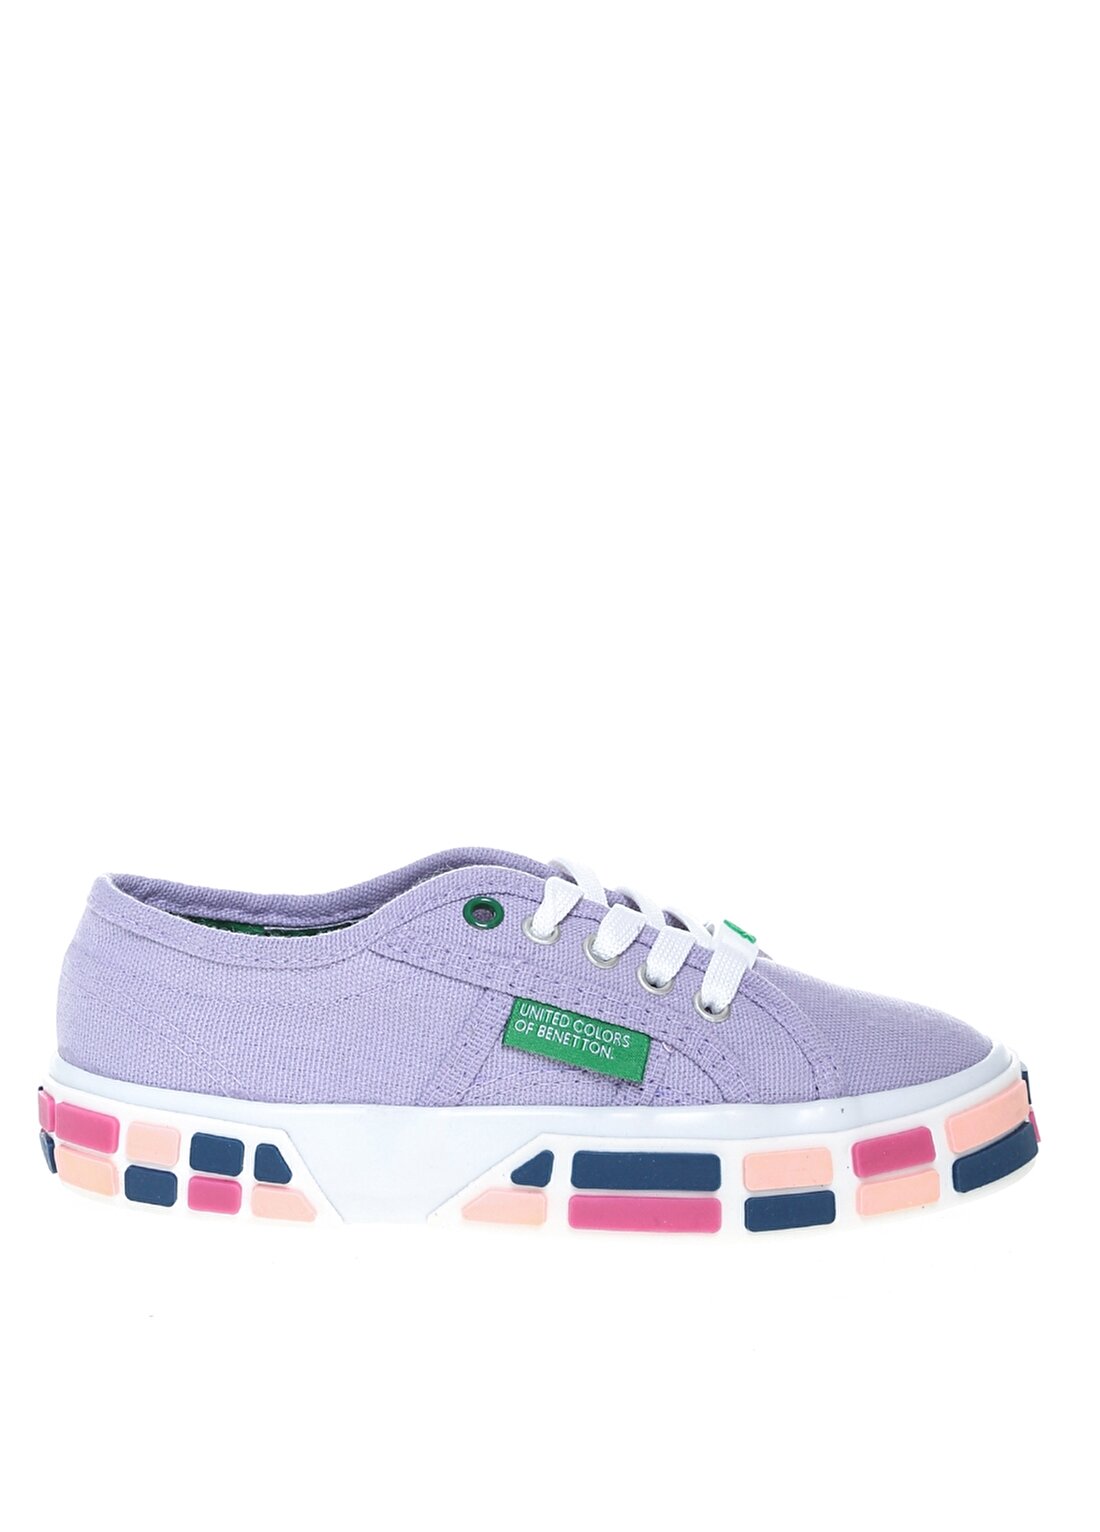 Benetton Lila Kız Çocuk Yürüyüş Ayakkabısı BN-30693 92-